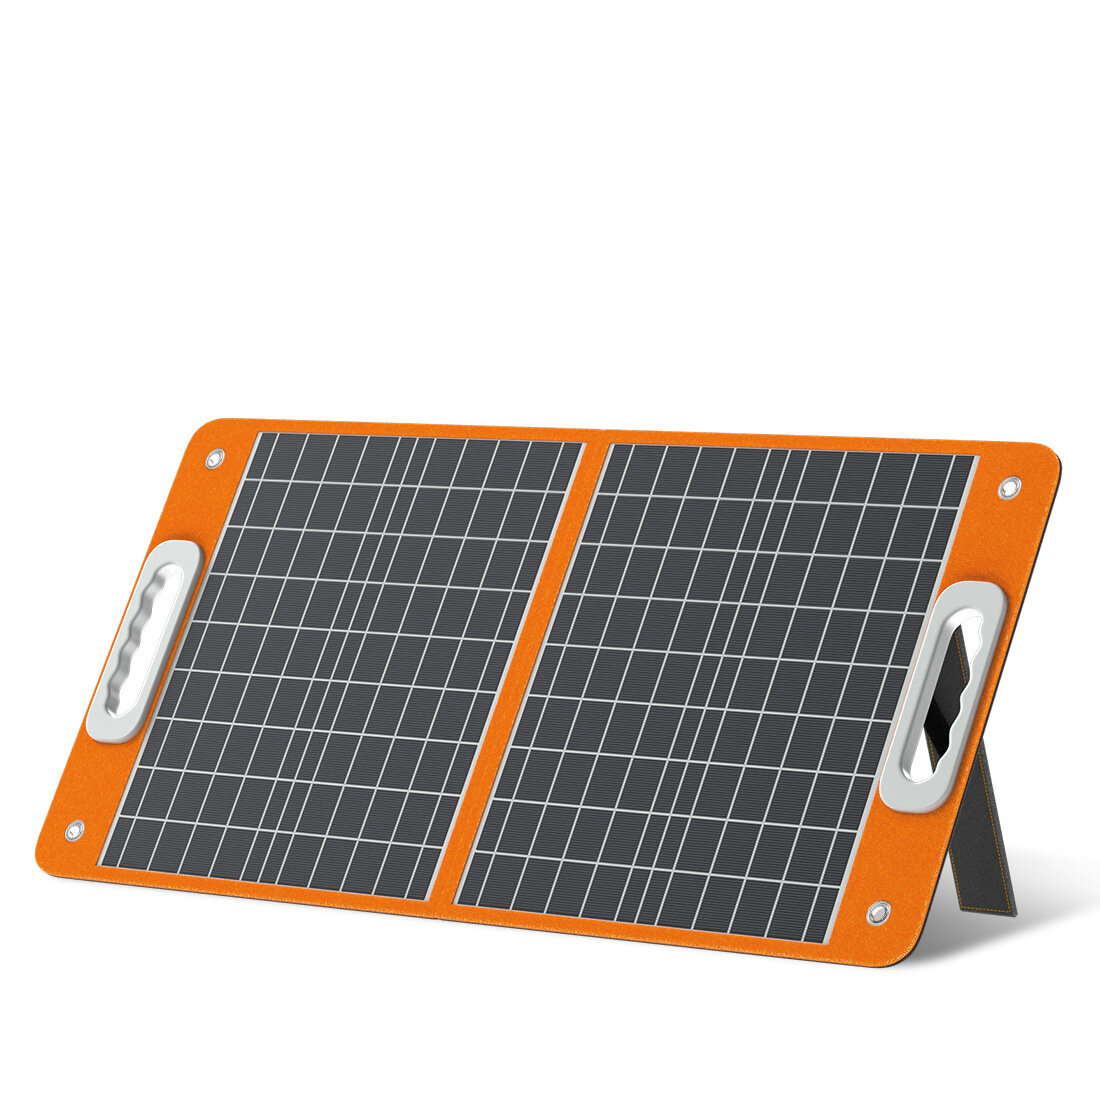 [US Direct] Flashfish 18V 60W Pieghevole solare Pannello portatile solare Caricabatterie con uscita CC USB-C QC3.0 per telefoni Tablet campeggio Van RV Trip